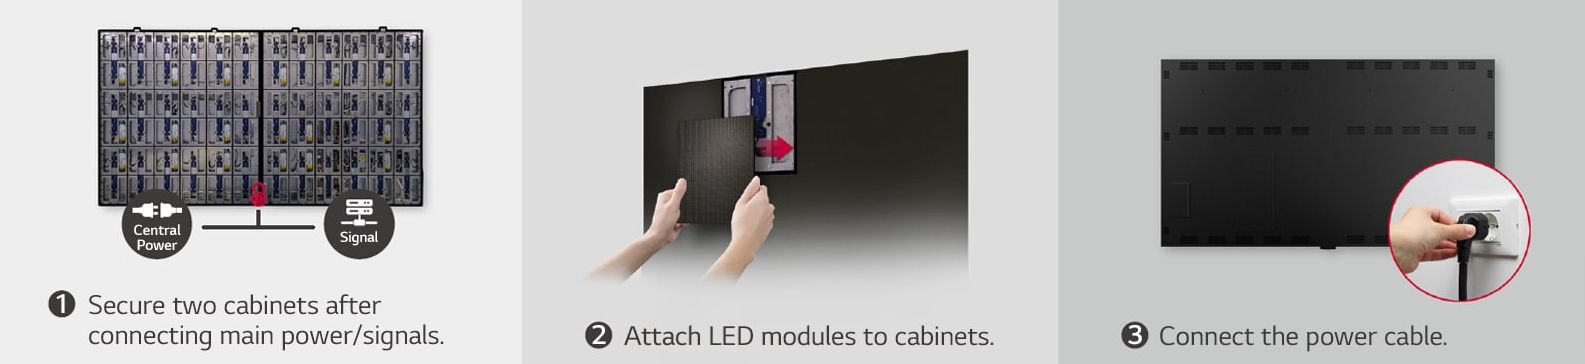 Das LG LAEC015 bietet eine einfache und schnelle Montage und wird in 2 Einzelteilen geliefert